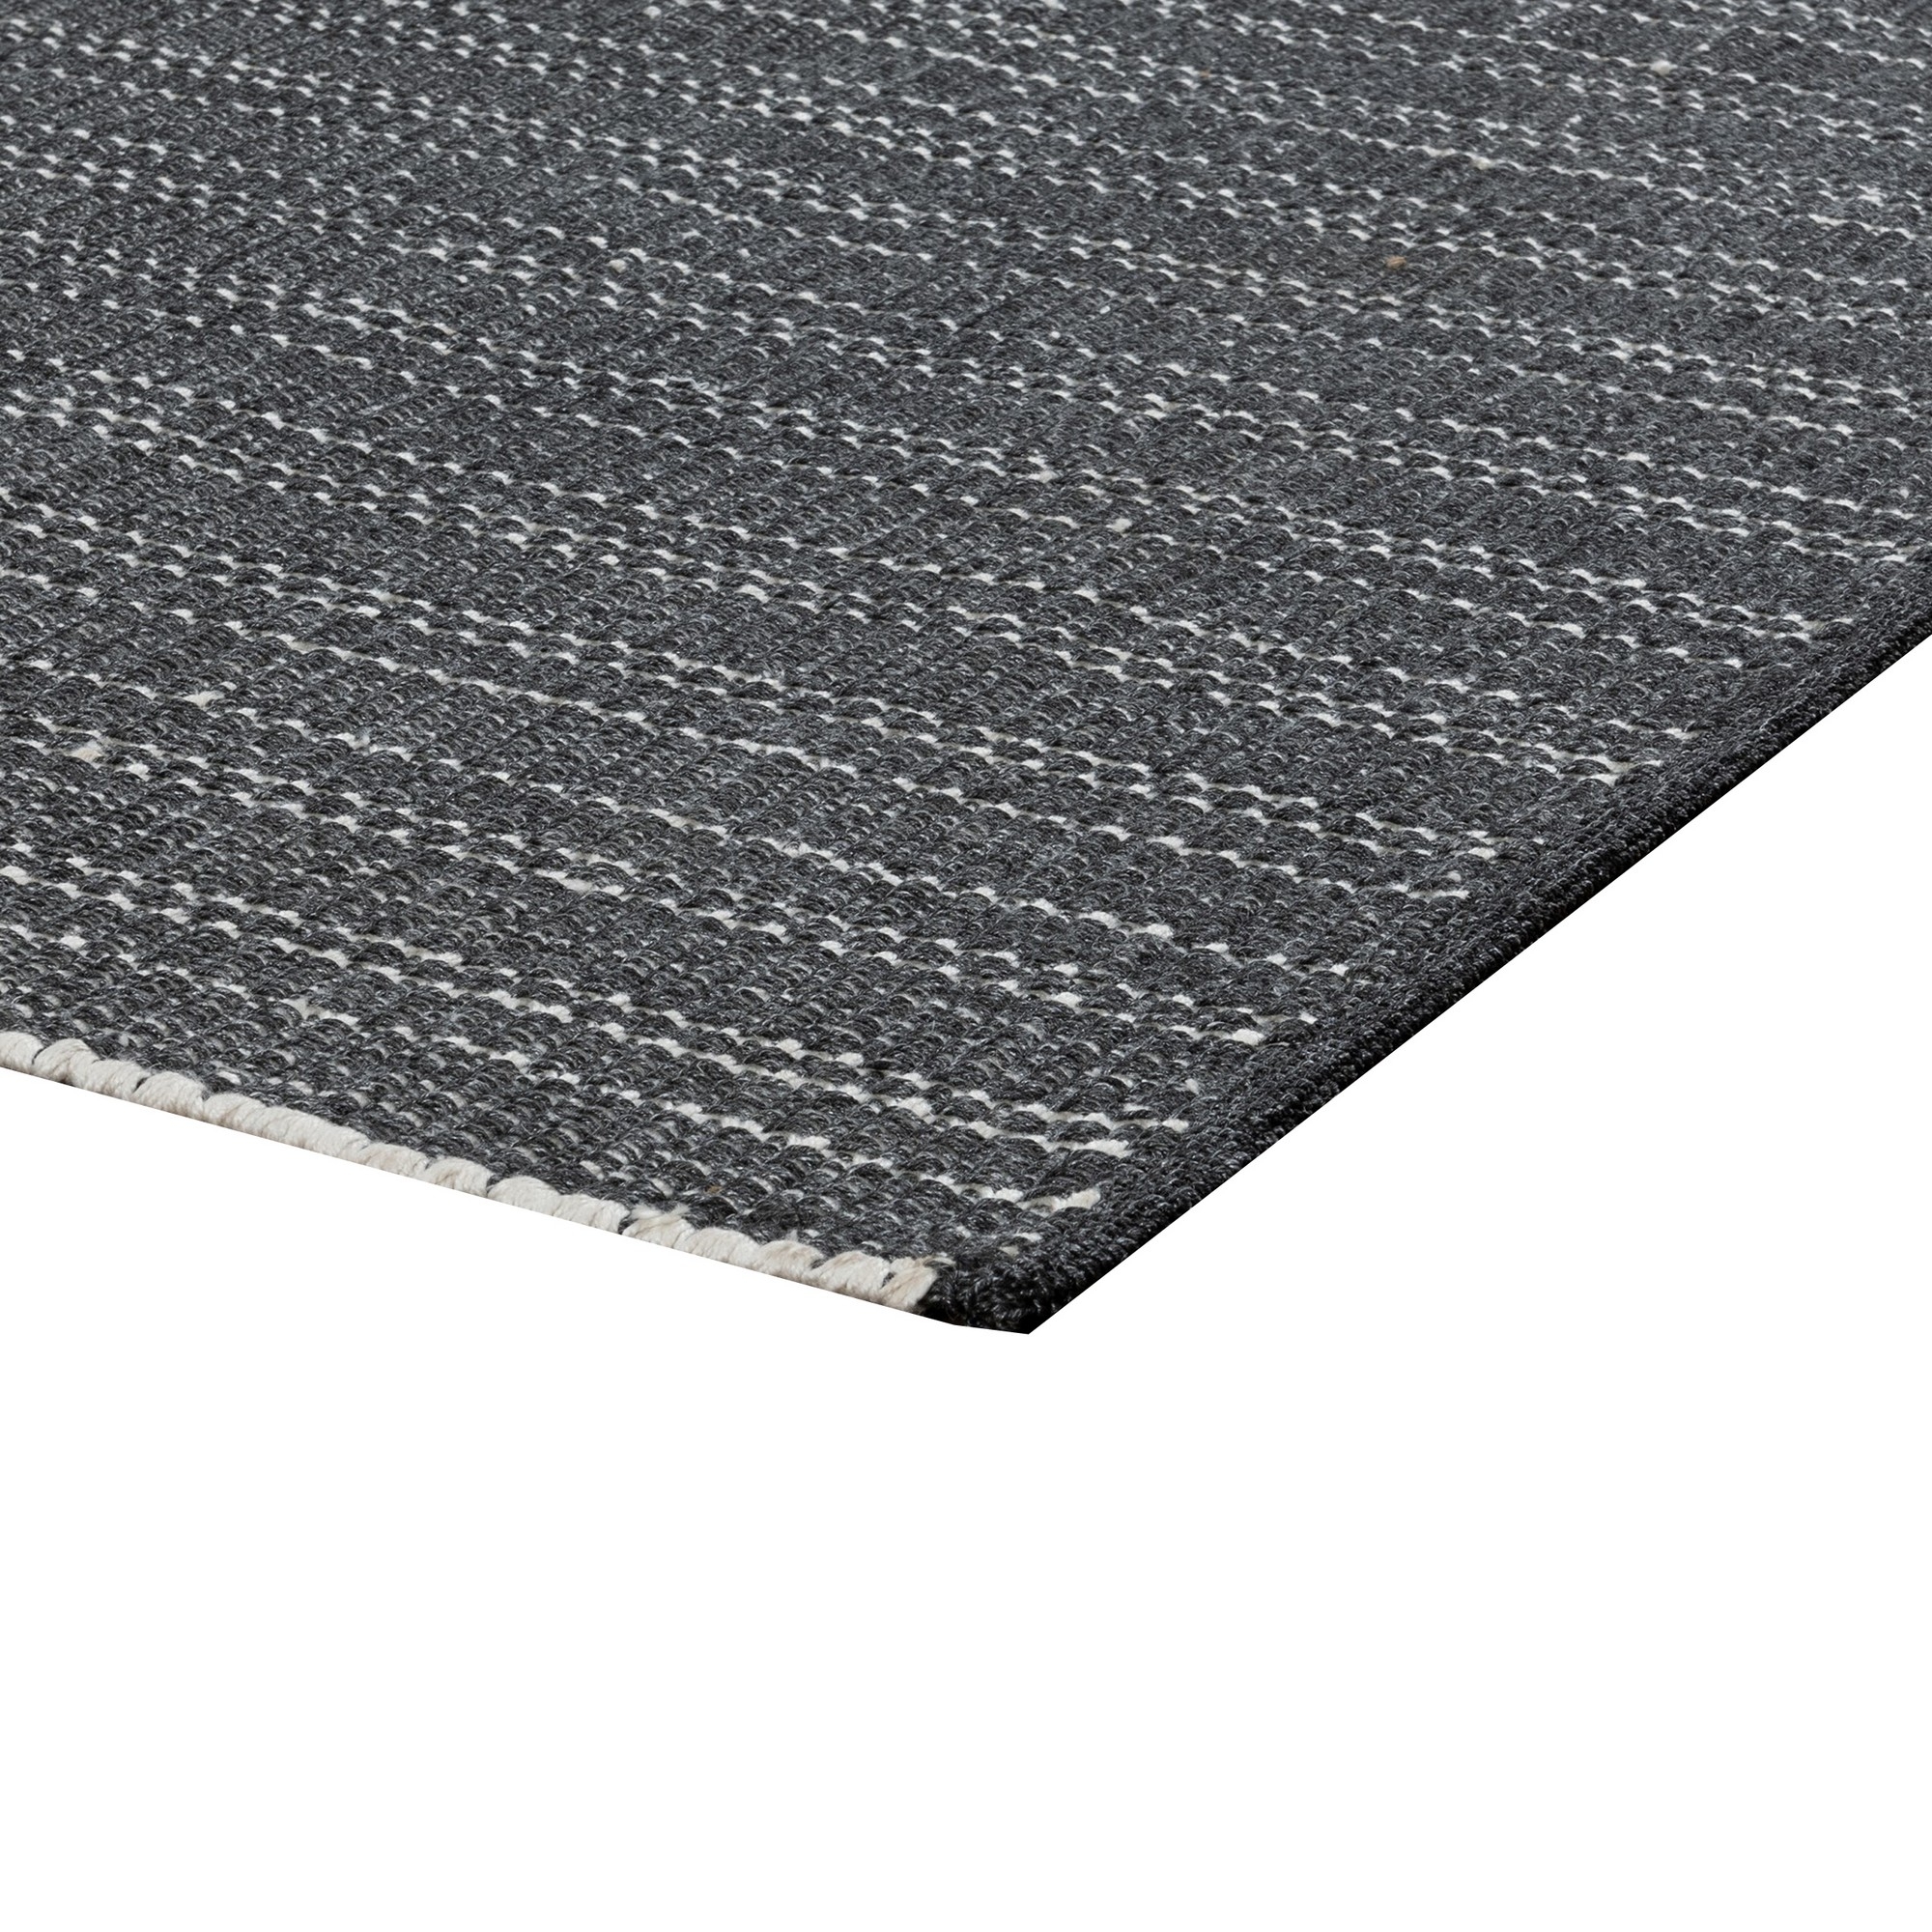 Leah 8 X 10 Indoor Outdoor Area Rug, Handwoven Charcoal Gray Polypropylene- Saltoro Sherpi